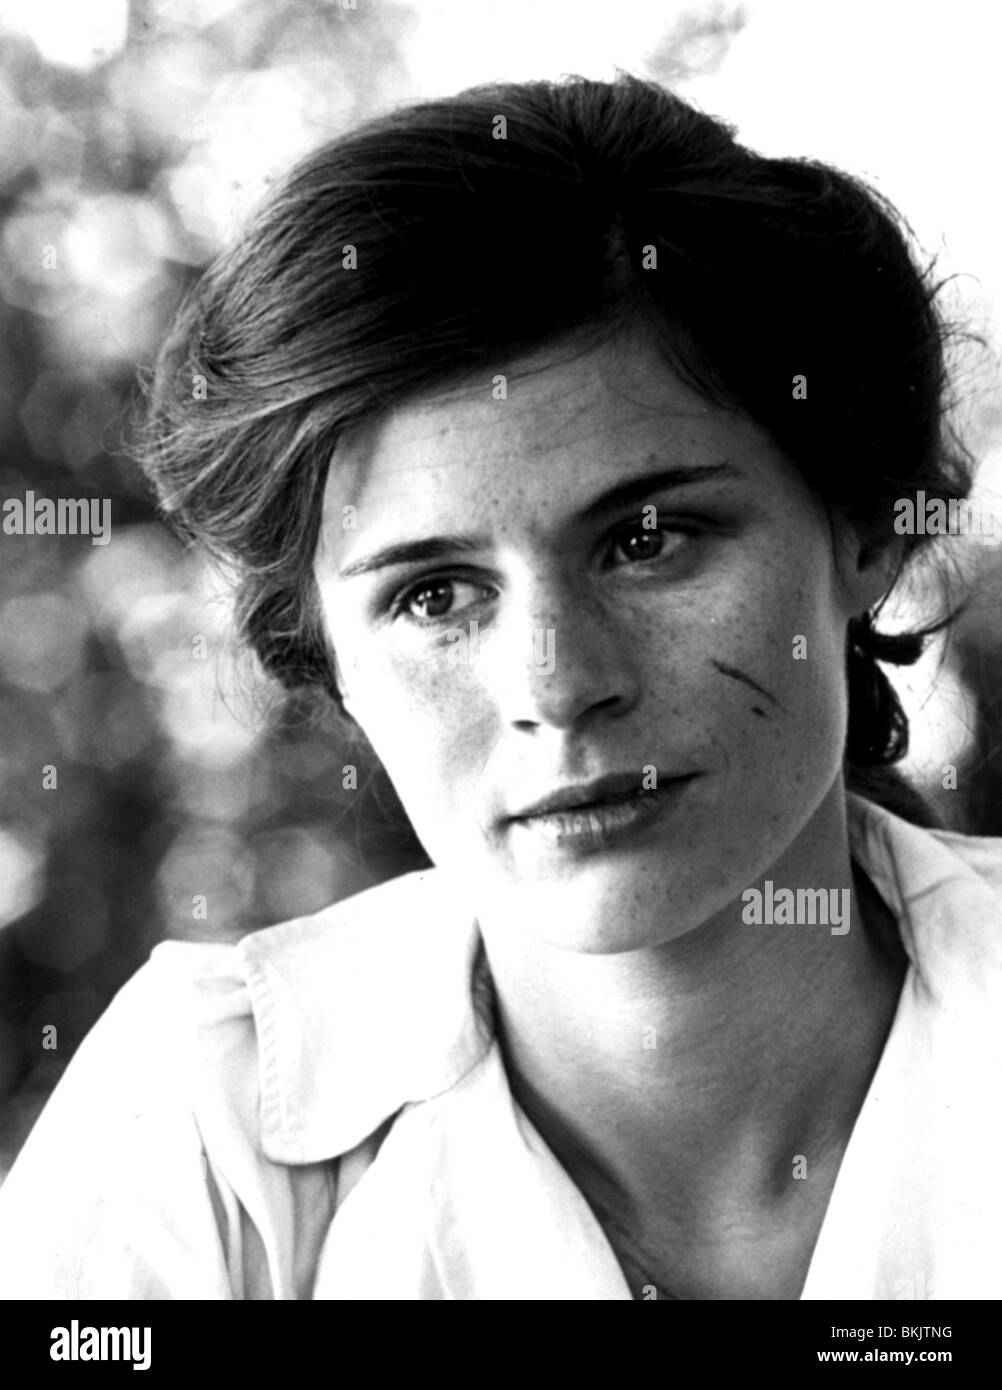 Suzanna hamilton 1984